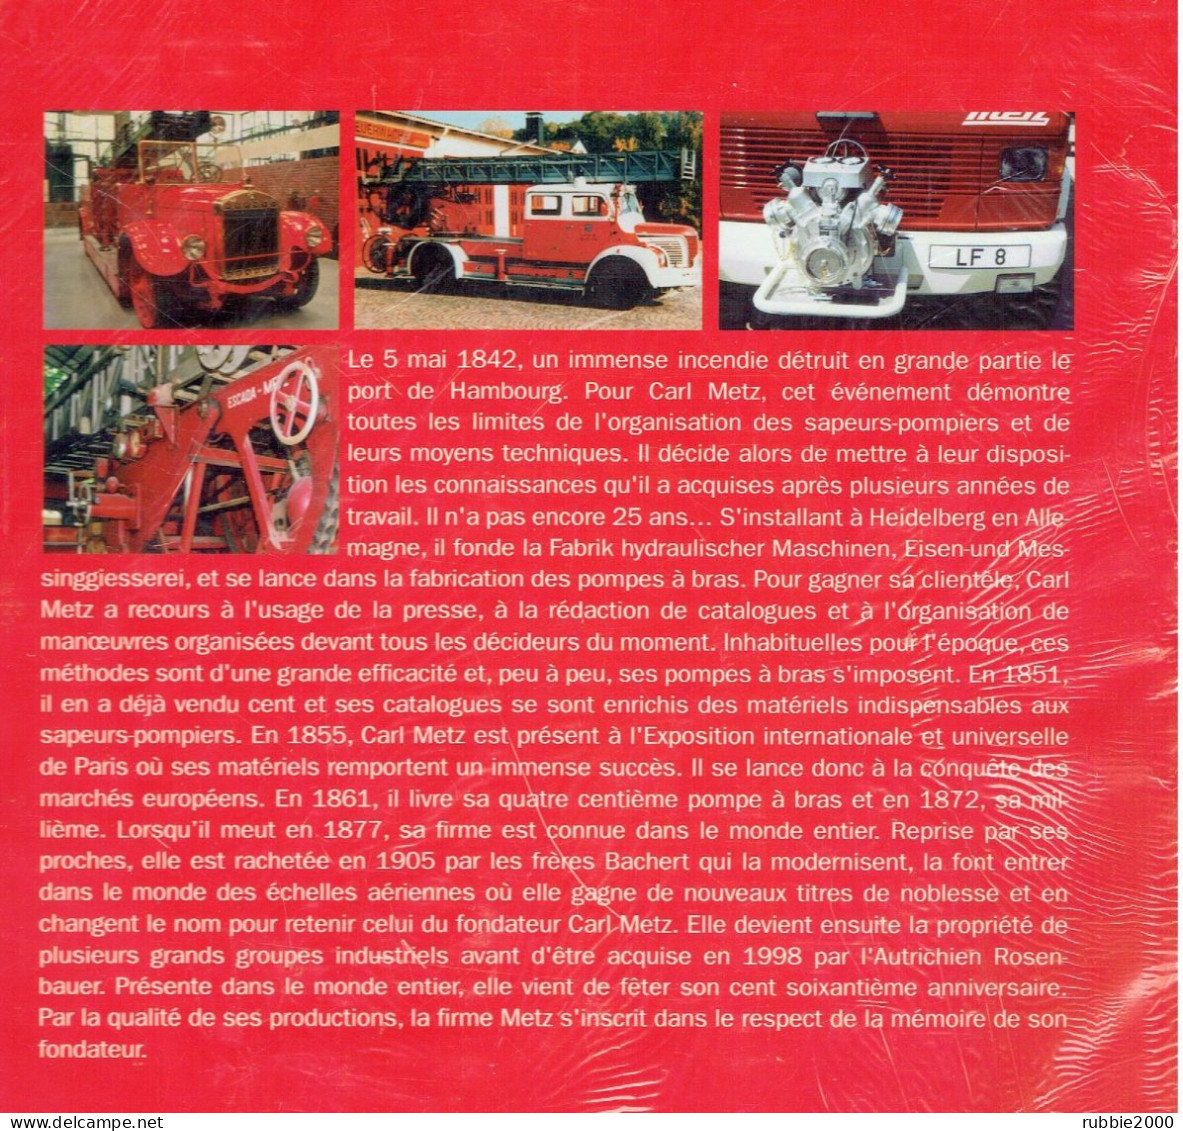 CARL METZ ET LES VEHICULES DE SAPEURS POMPIERS 2002 PAR J.F. SCHMAUCH SAPEUR POMPIER - Pompieri